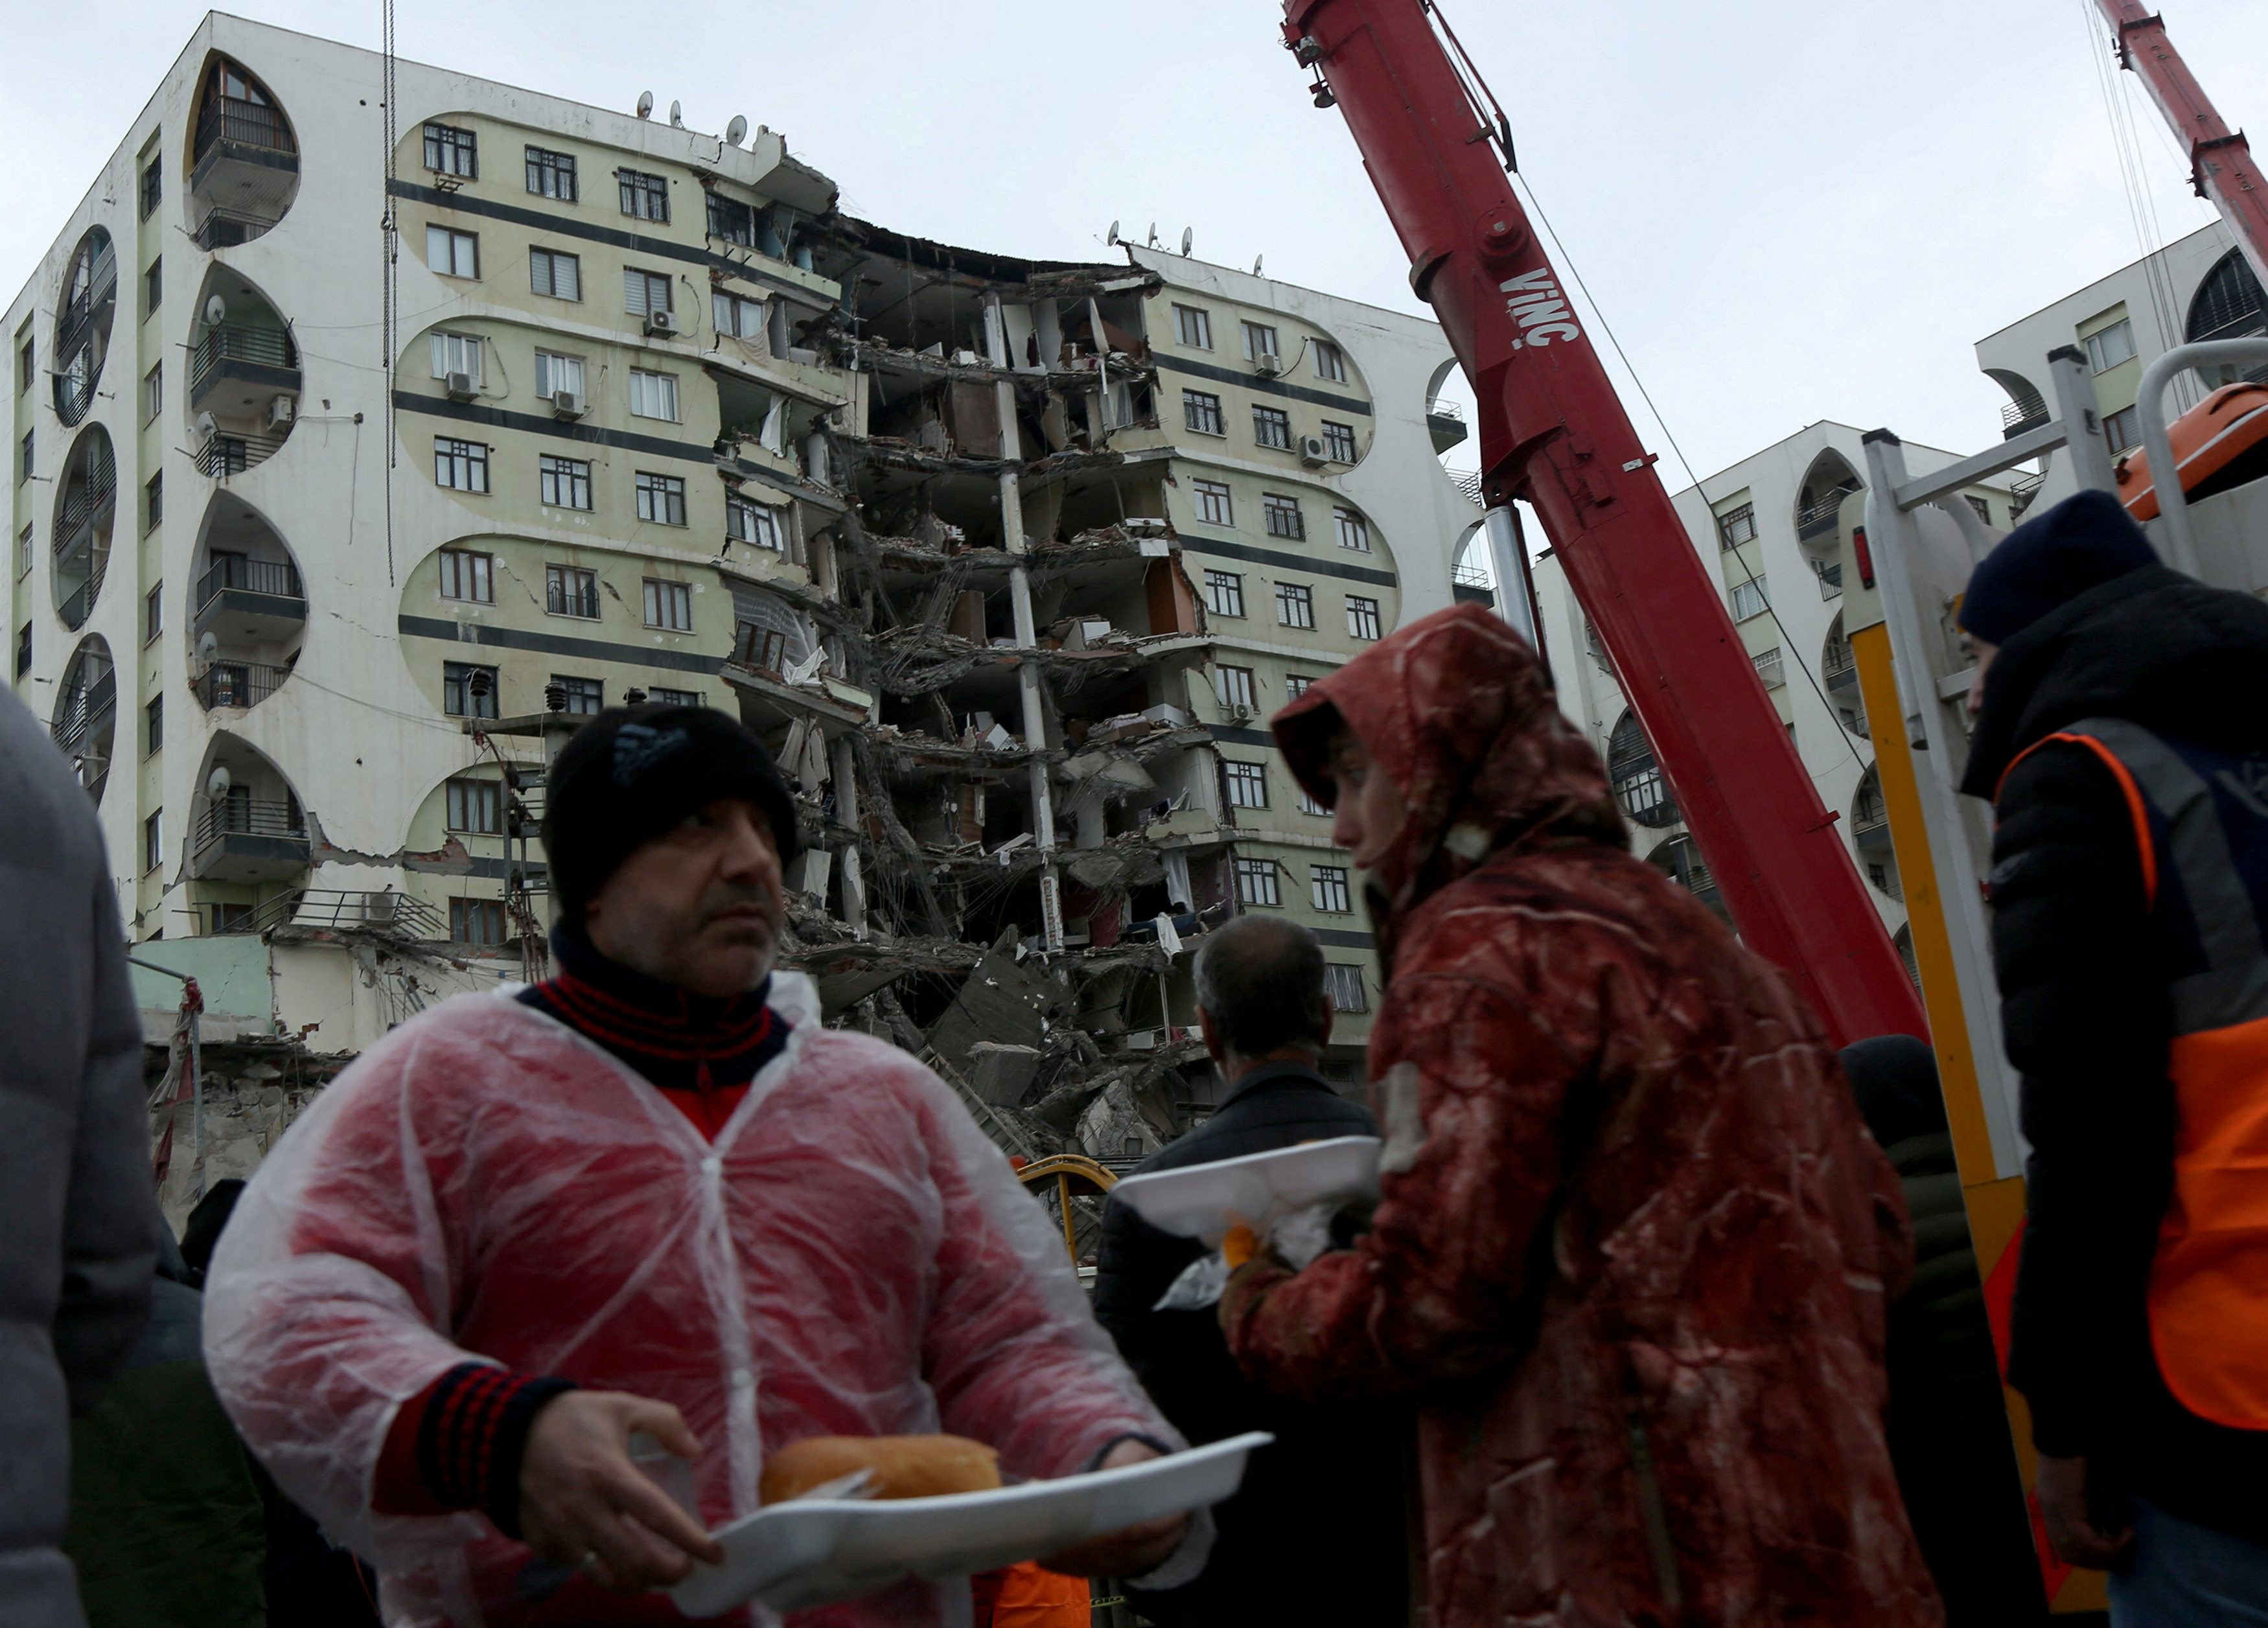 Las personas reciben alimentos mientras esperan cerca de un edificio dañado tras un terremoto en Diyarbakir, Turquía.
